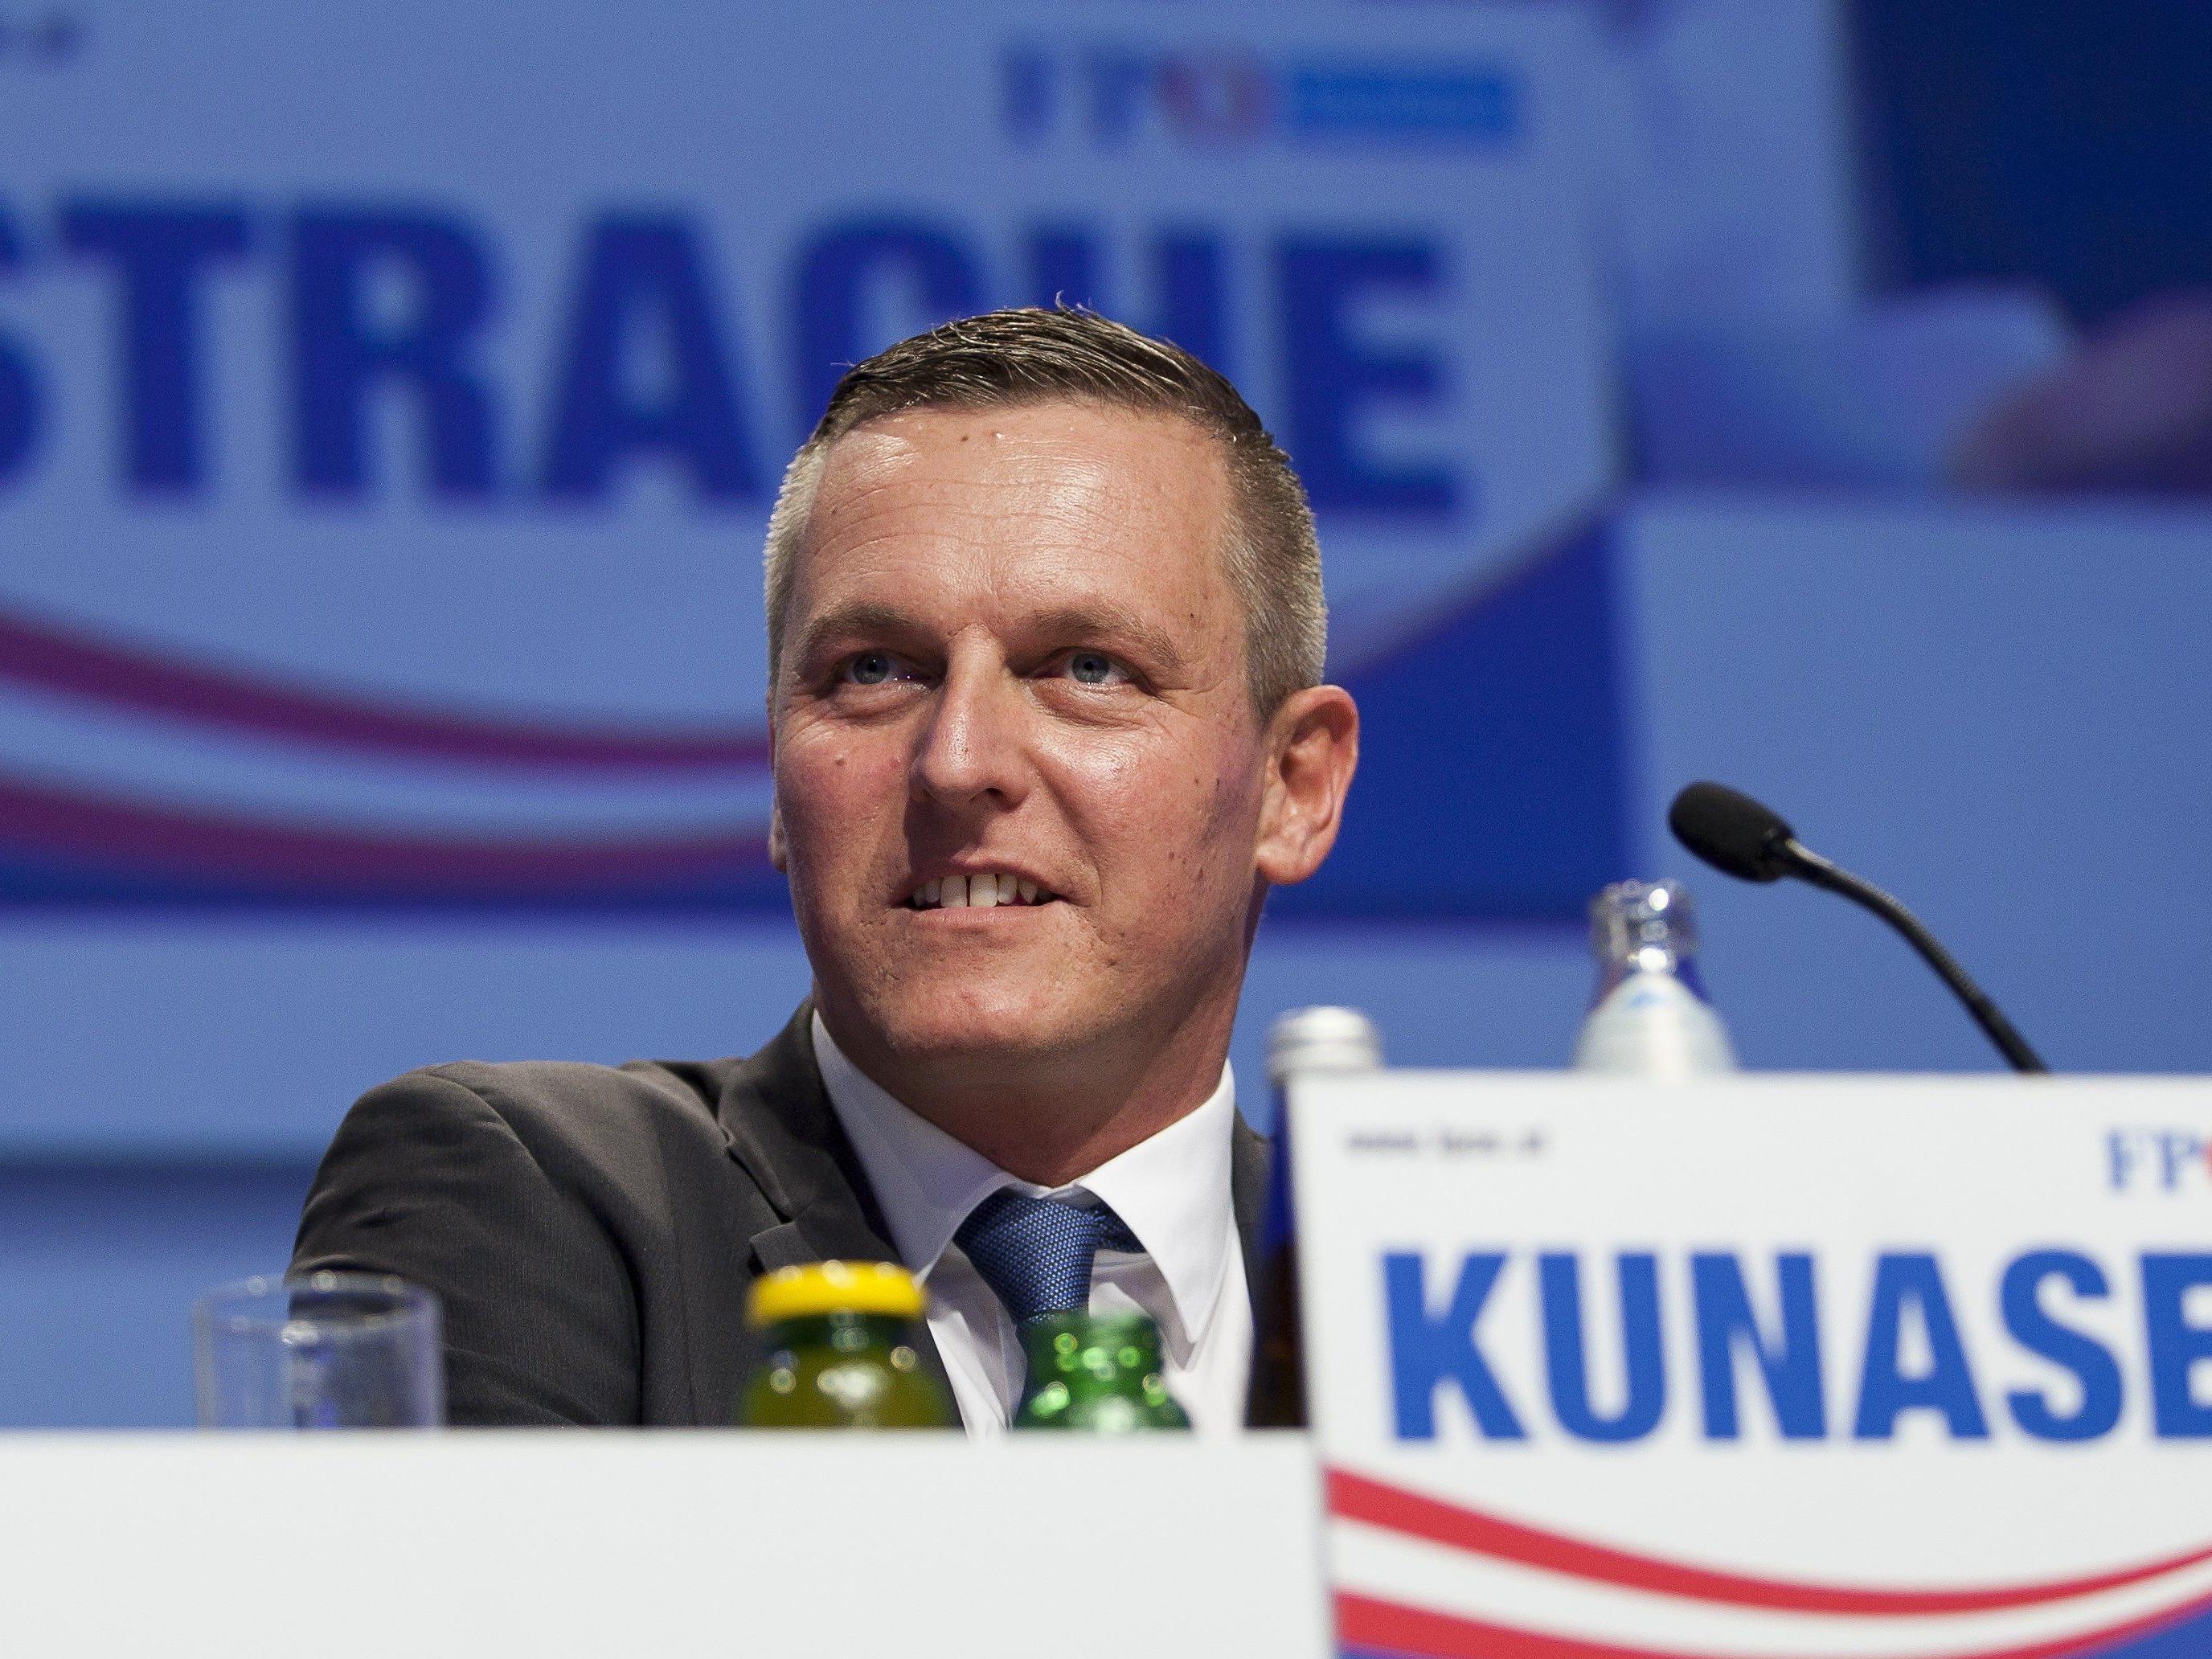 Mario Kunasek ist der FPÖ-Spitzenkandidat bei der steirischen Landtagswahl 2015.